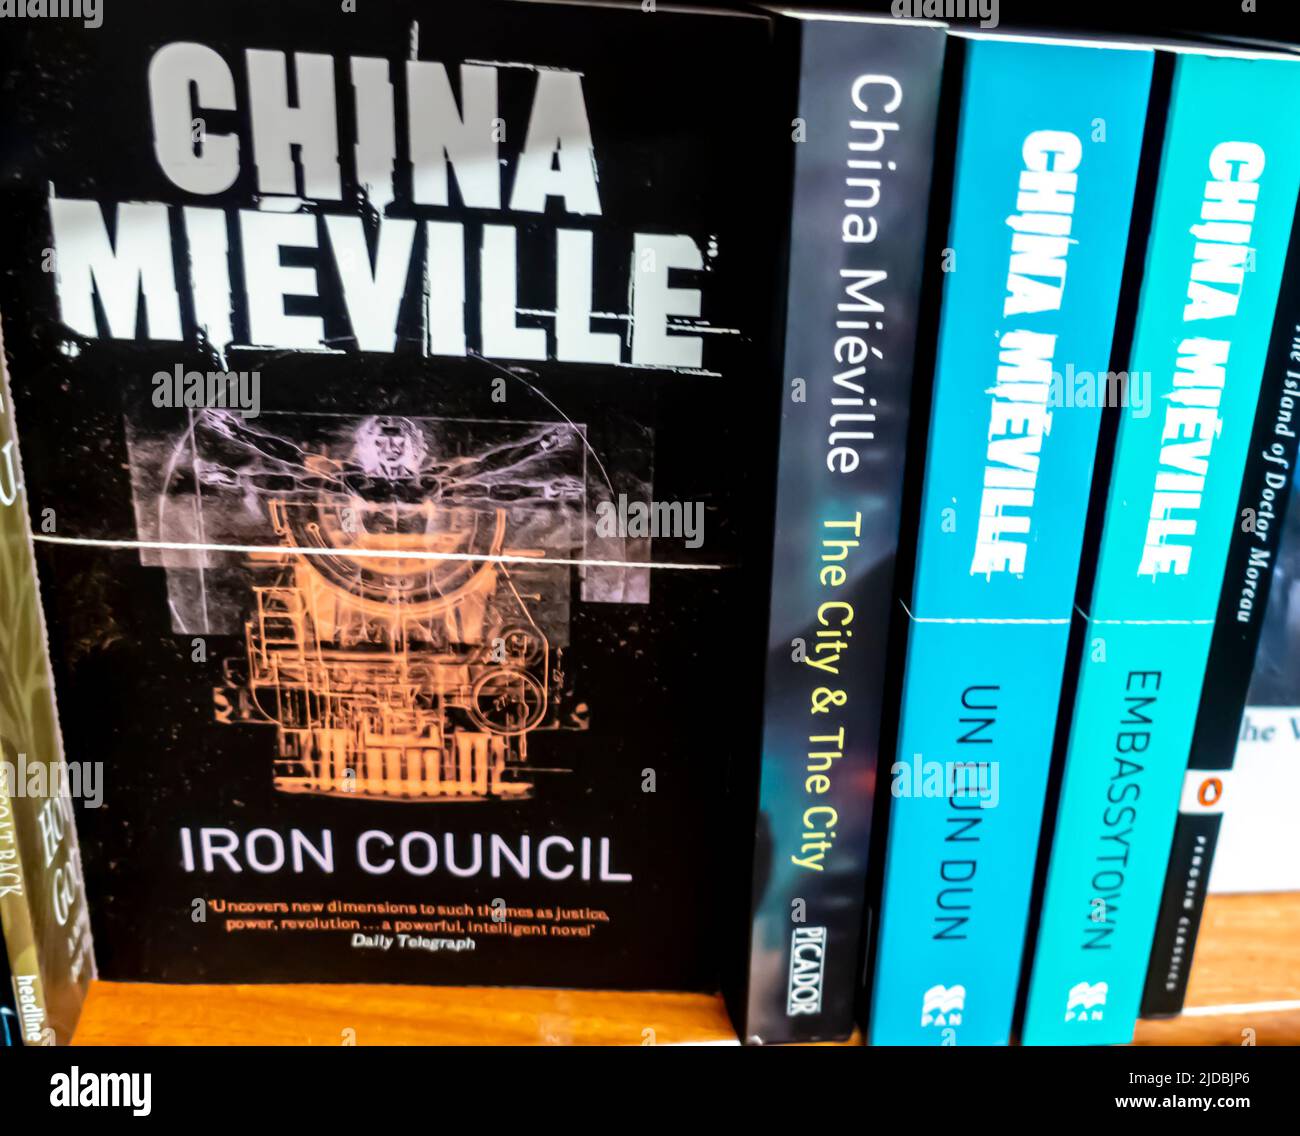 China Mieville - Iron Council et d'autres ouvrages romans sur étagère Banque D'Images